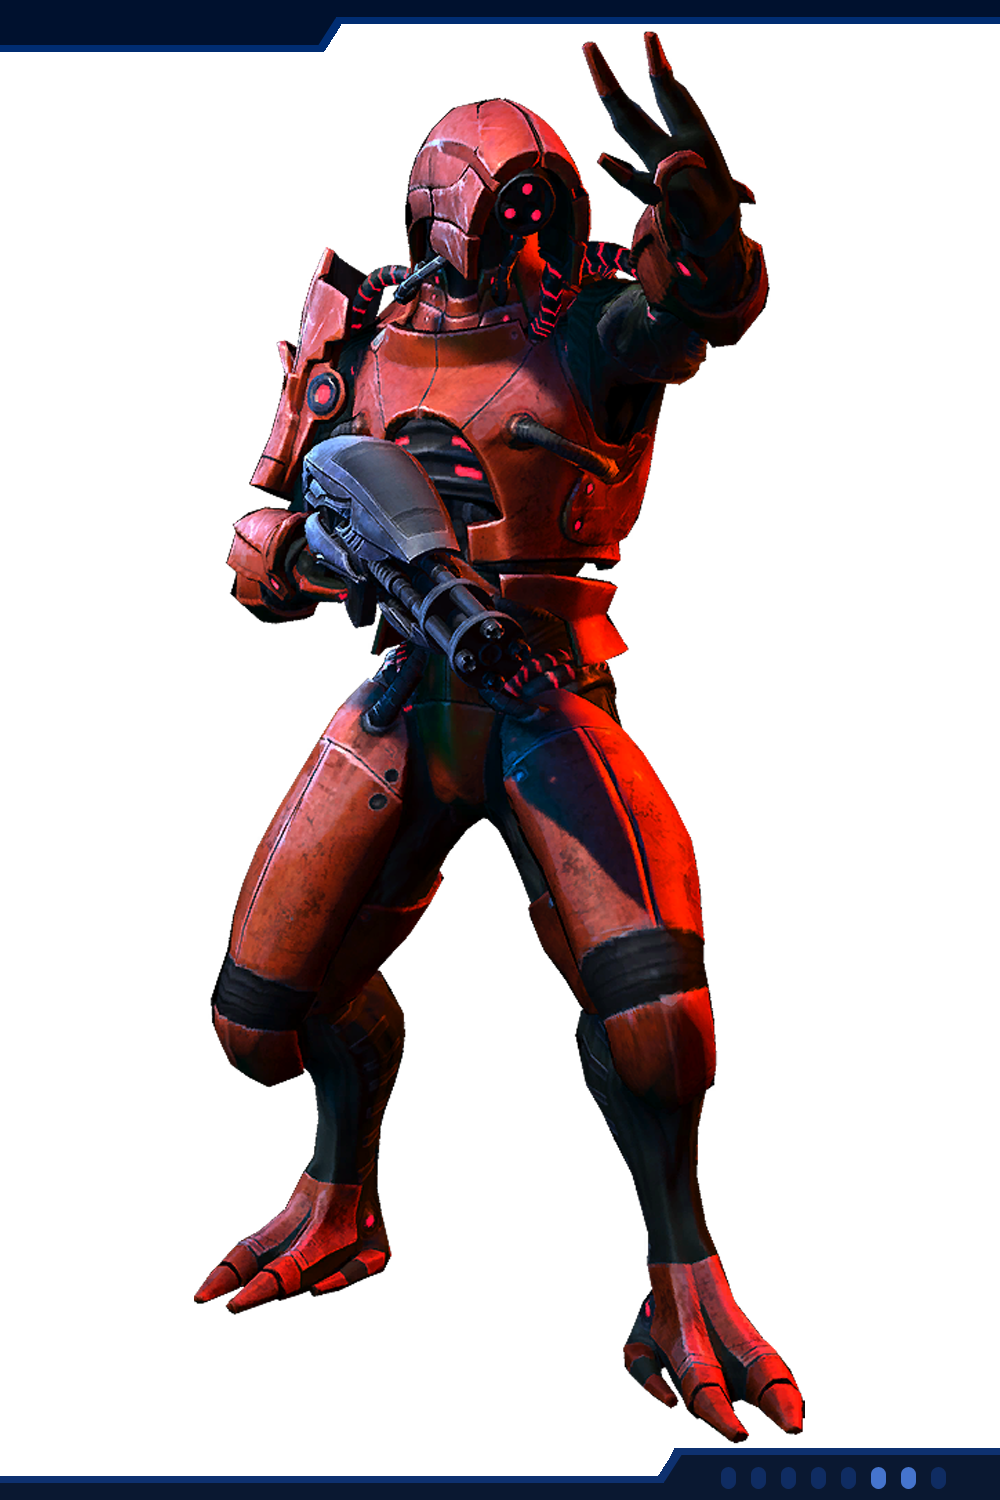 Geth Juggernaut Soldier) - один из персонажей в коллективной игре "Mas...